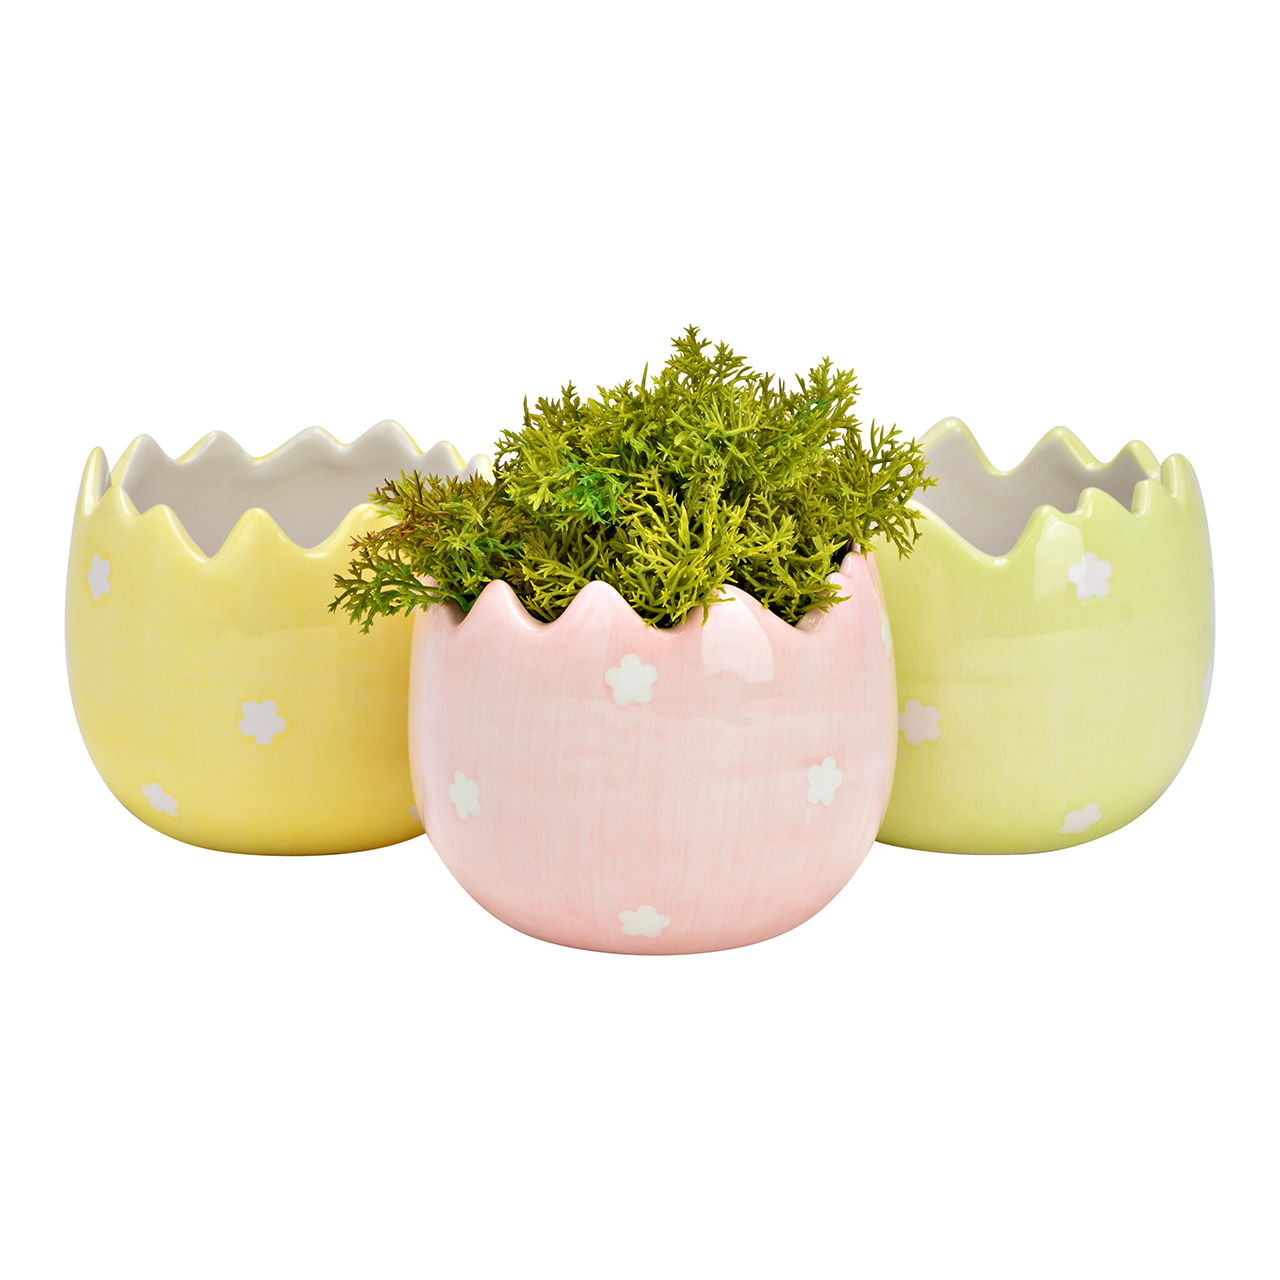 Pot de fleurs Oeuf de Pâques Décor floral en céramique, jaune/vert/rose 3 fois, (L/H/P) 9x9x9cm